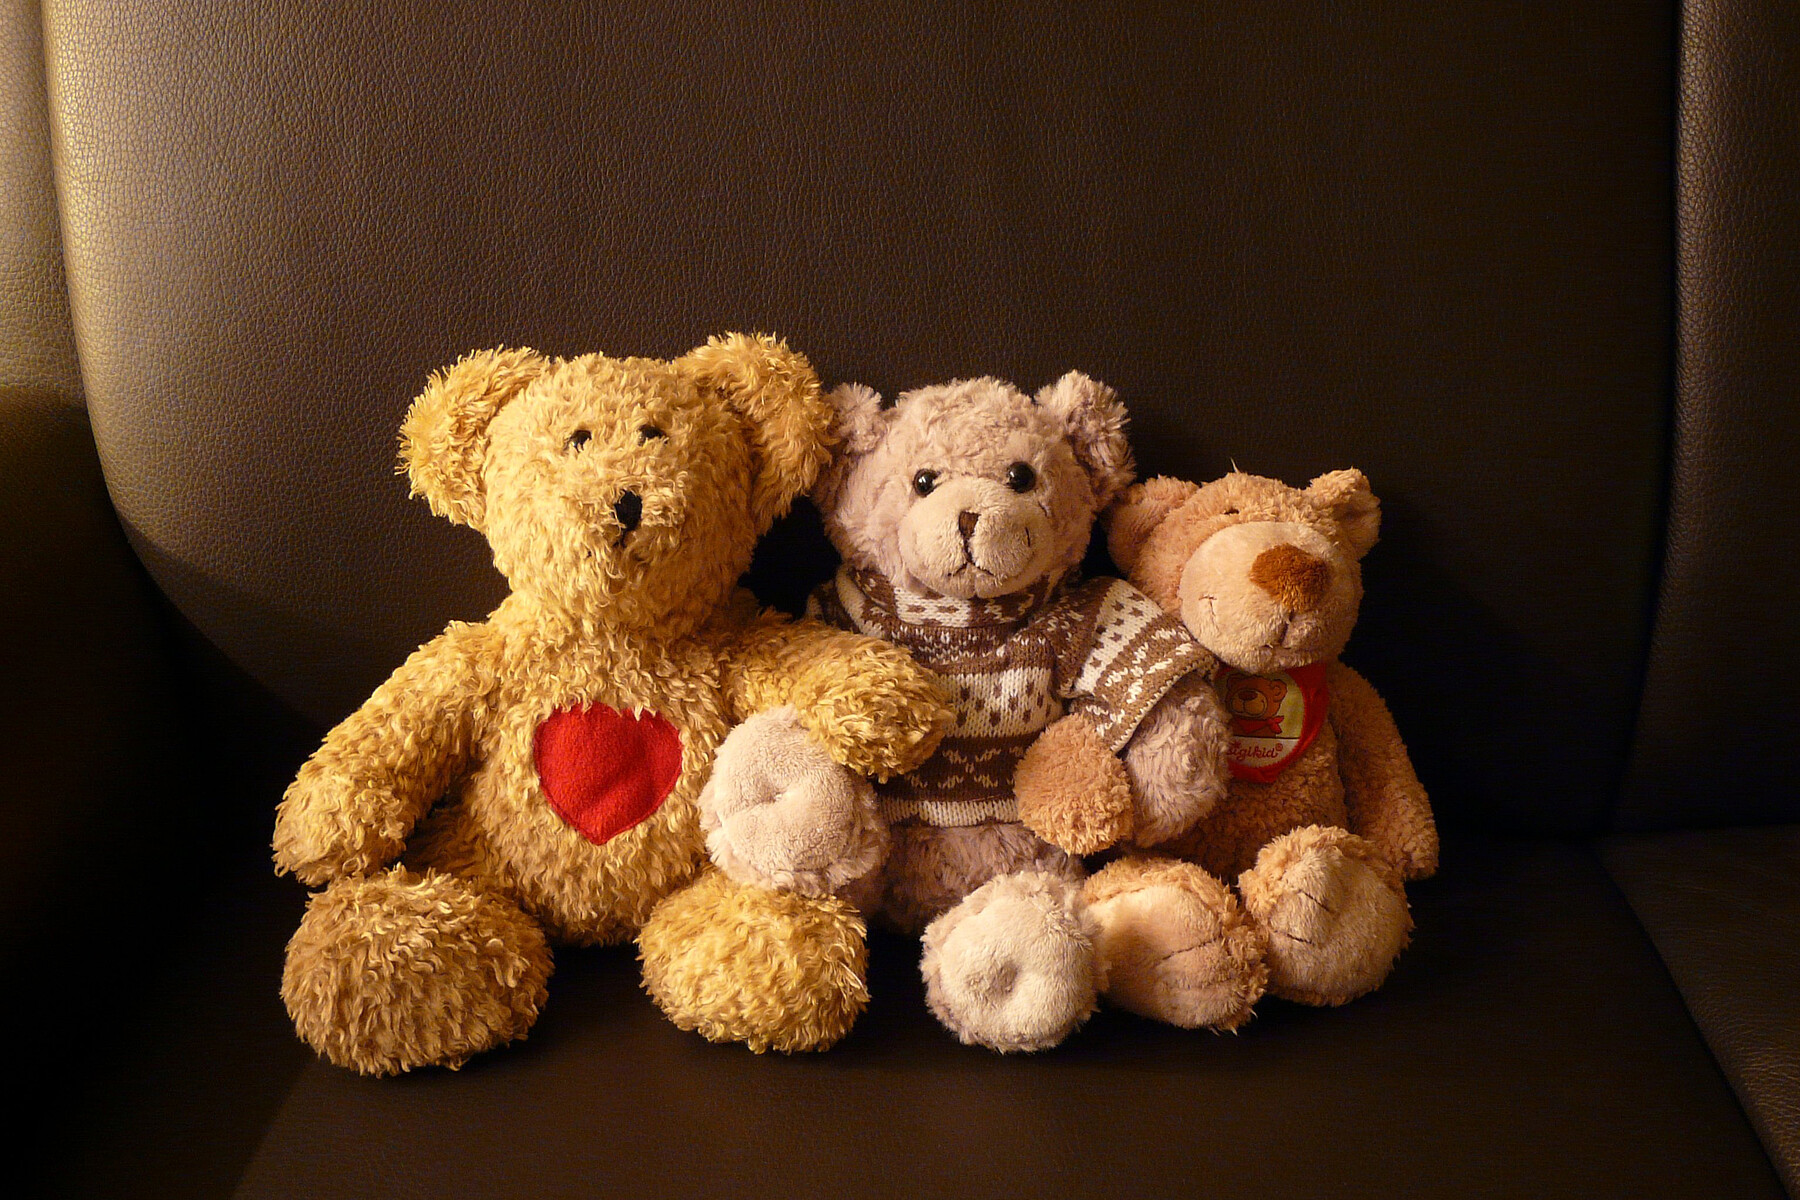 Teddyfamilie auf einem Sofa